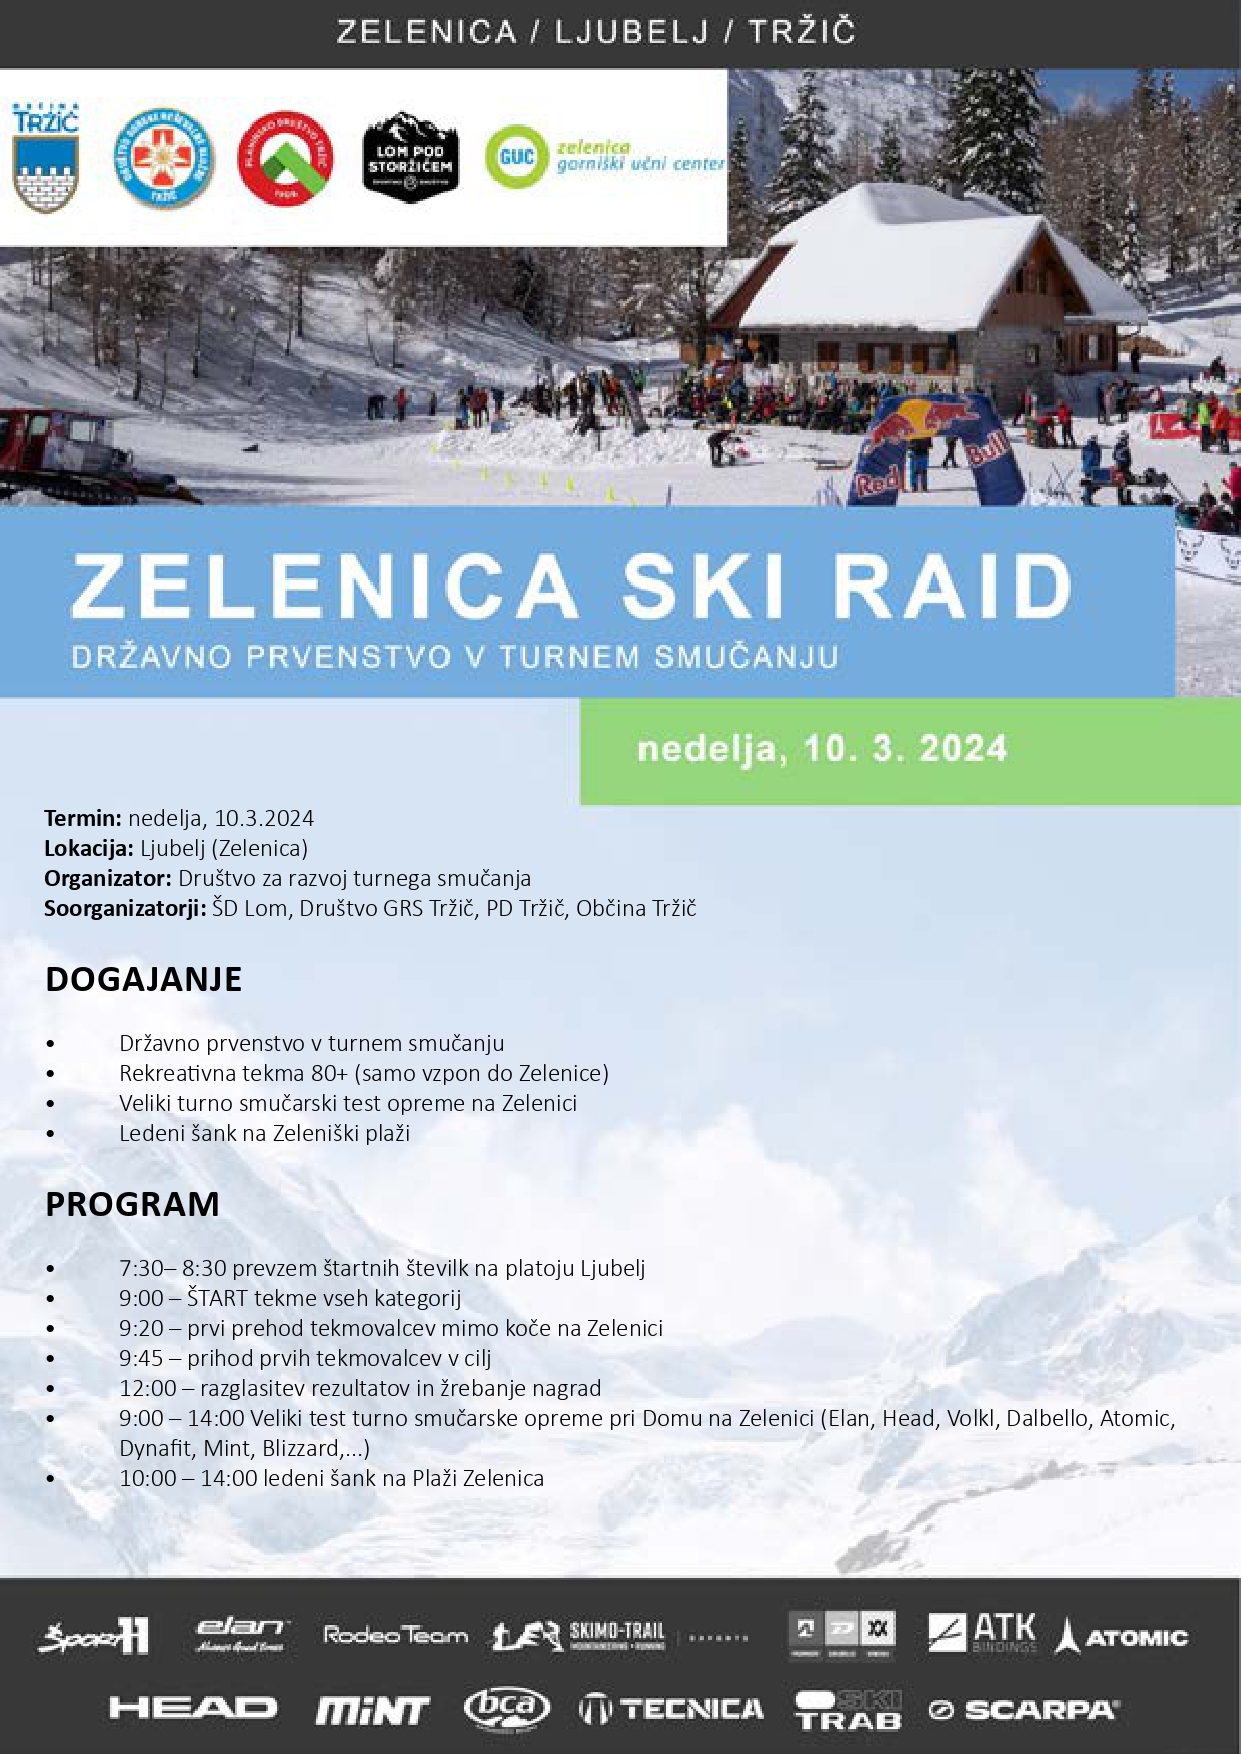 Zelenica_Ski_raid_2024_Razpis_page_0001